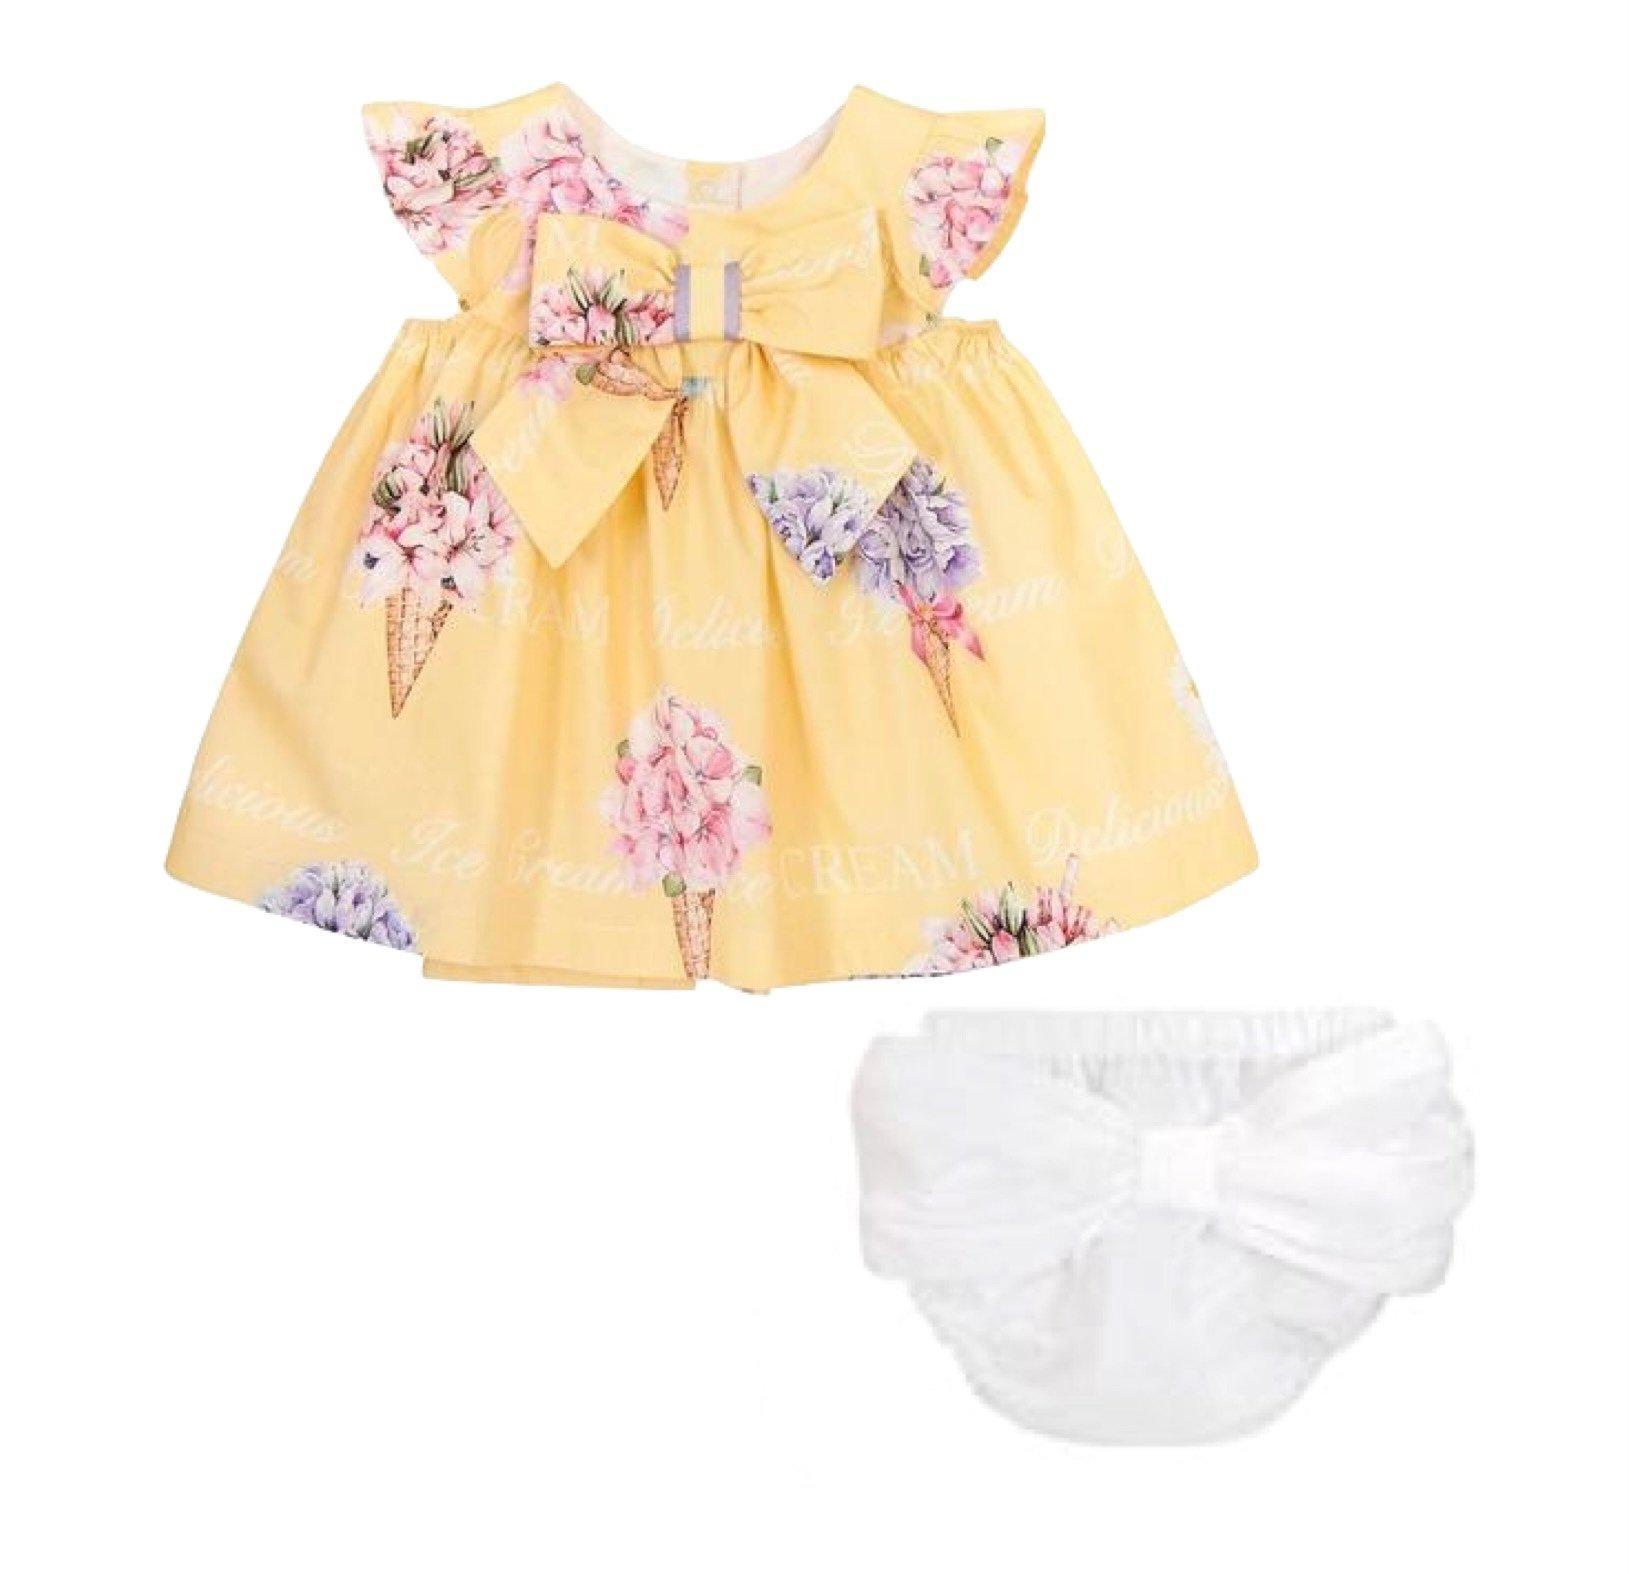 Balloon Chic Baby Girls Yellow Dress & Bloomer Set